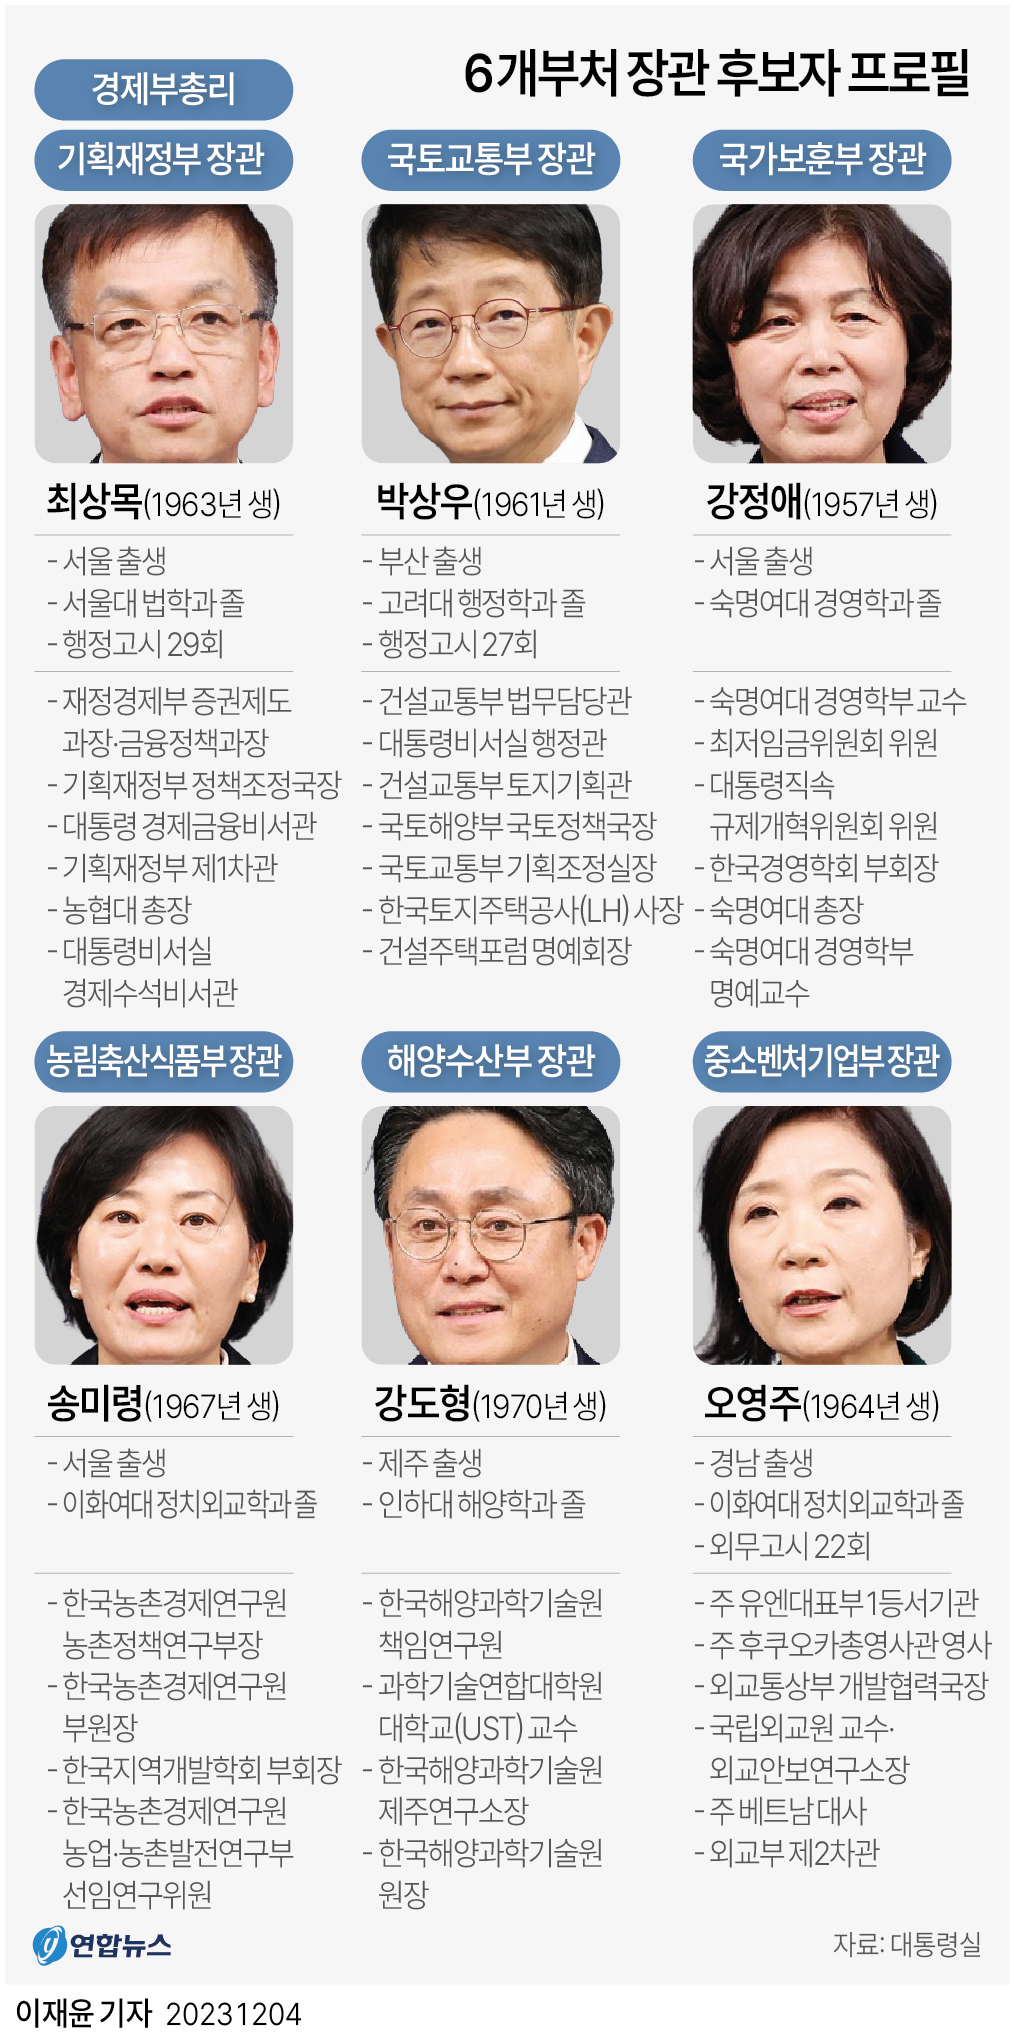 [그래픽] 6개 부처 장관 후보자 프로필